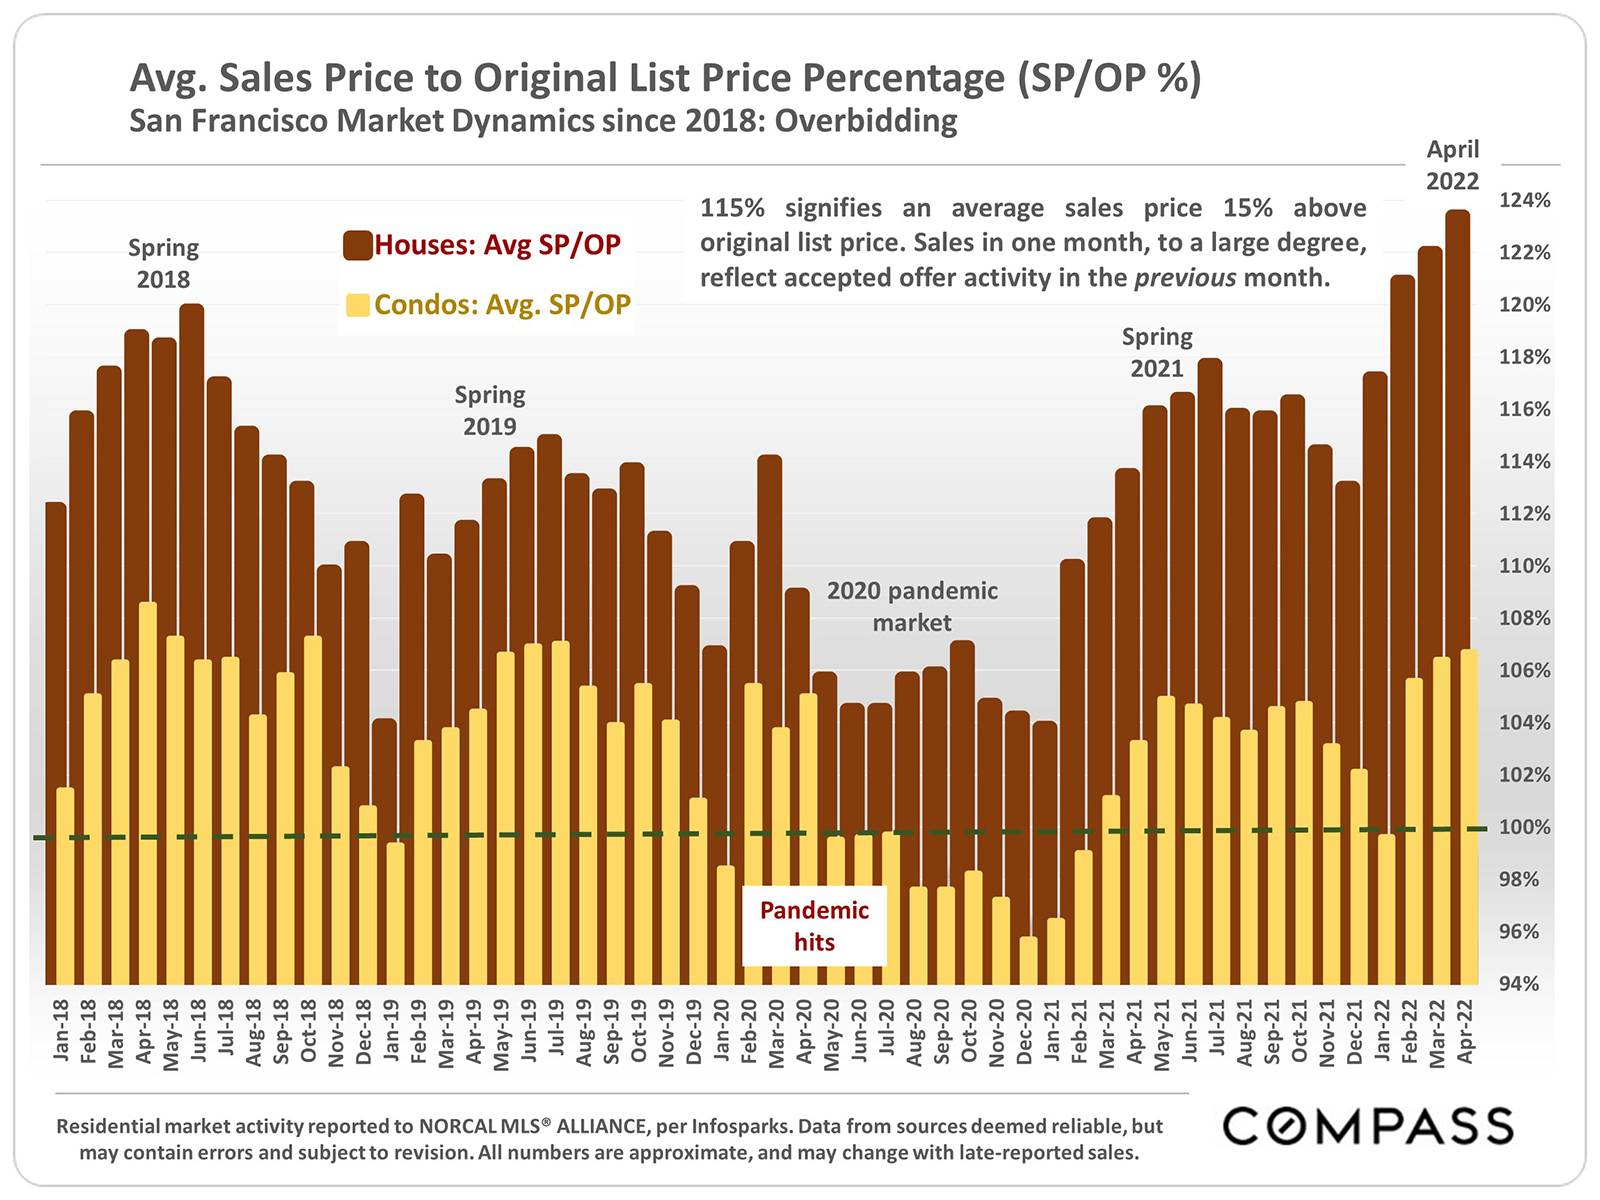 Average Sales Price to Original Price